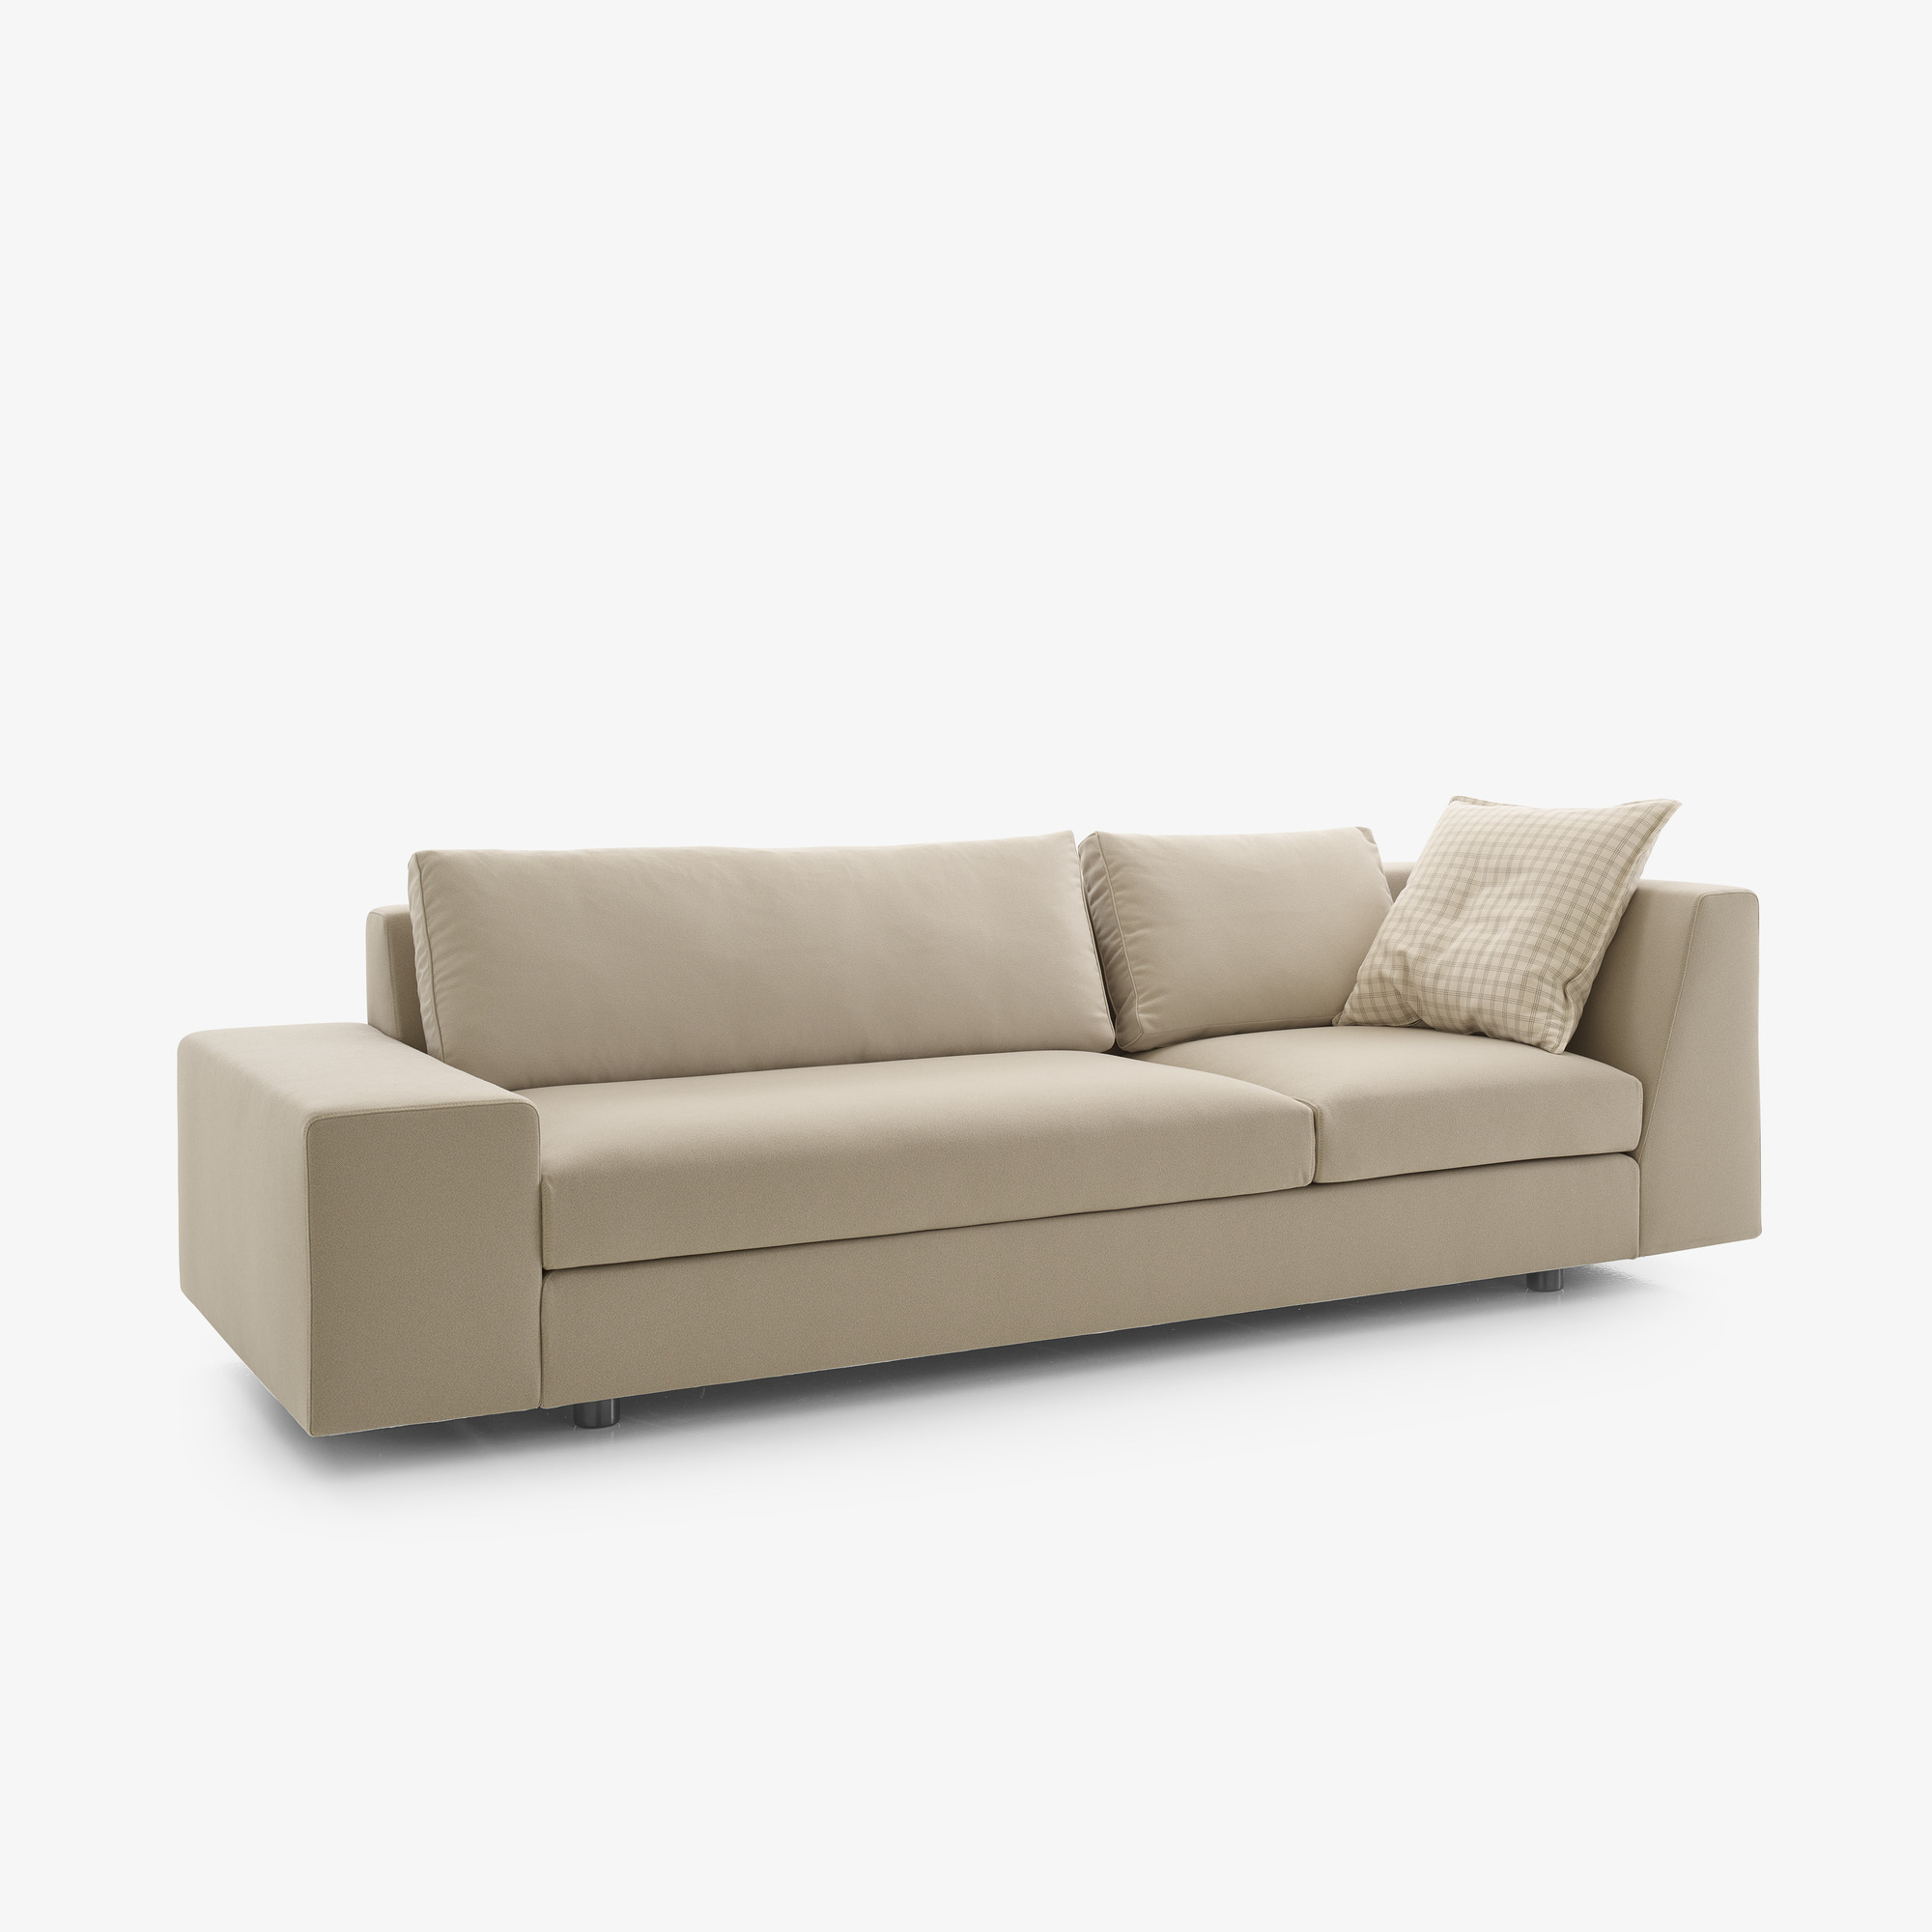 Image Sofa grande asimetrico articulo completo 2